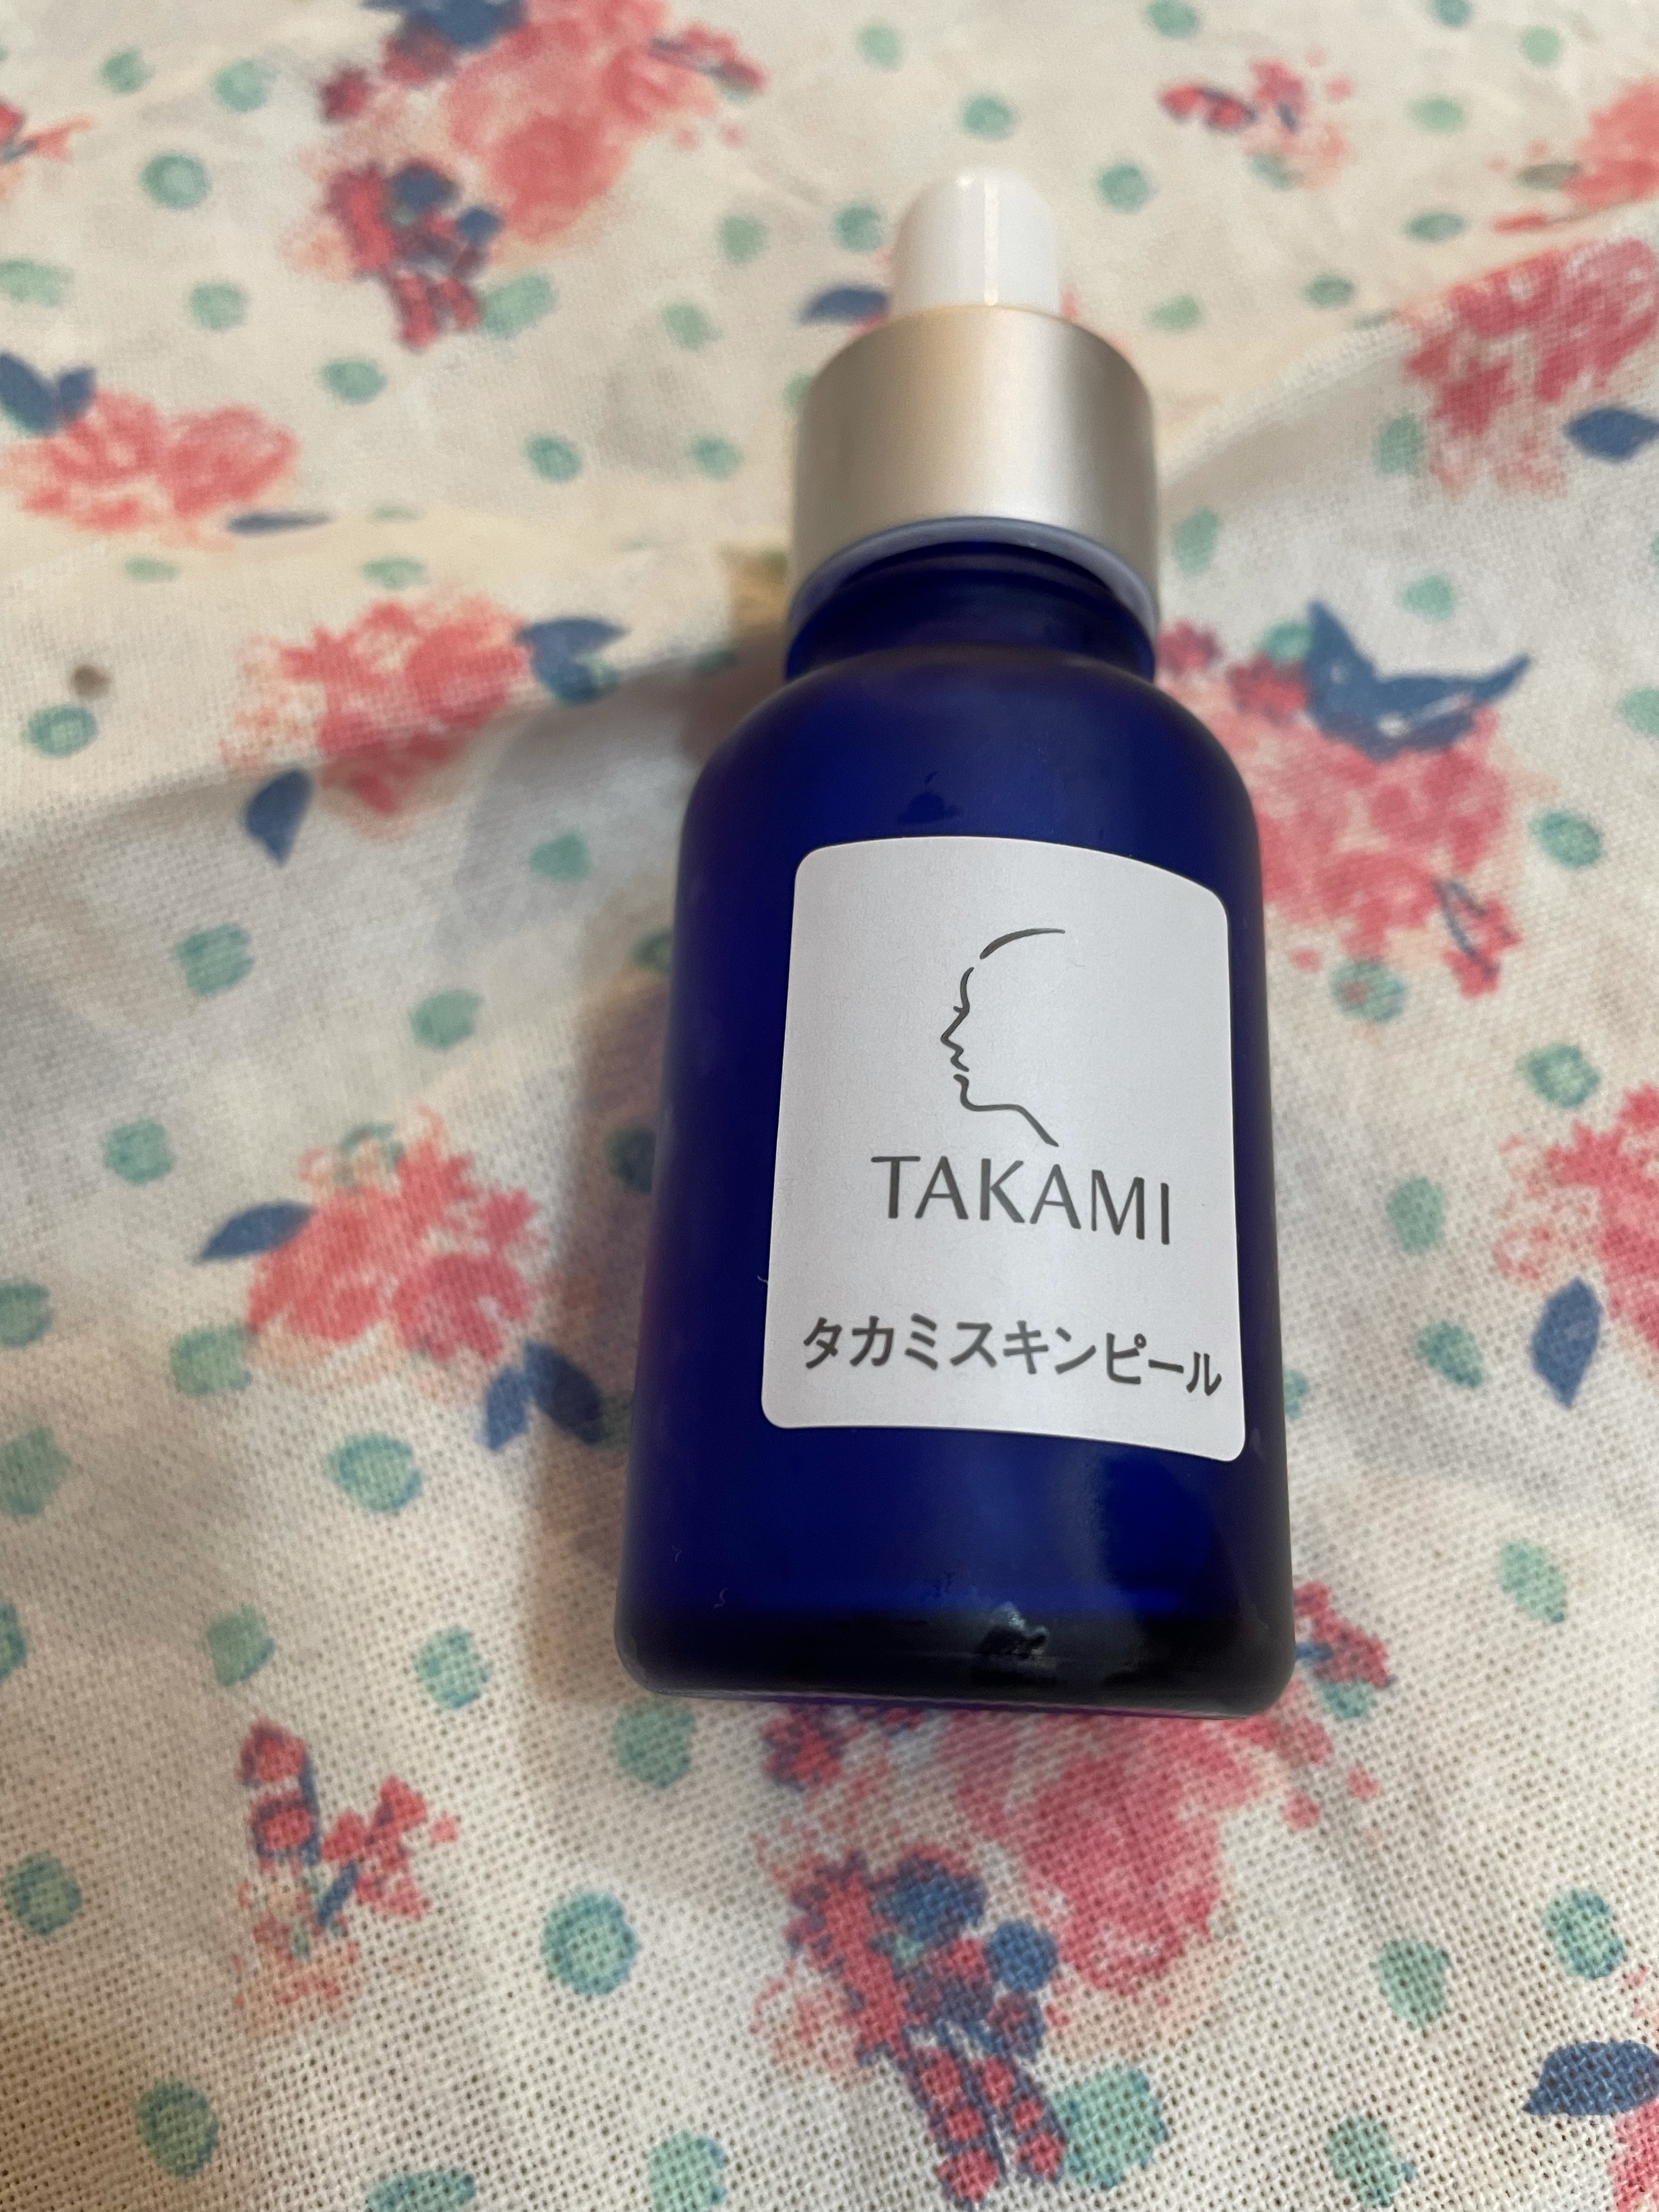 TAKAMI(タカミ) スキンピールの良い点・メリットに関するフジ子さんの口コミ画像2